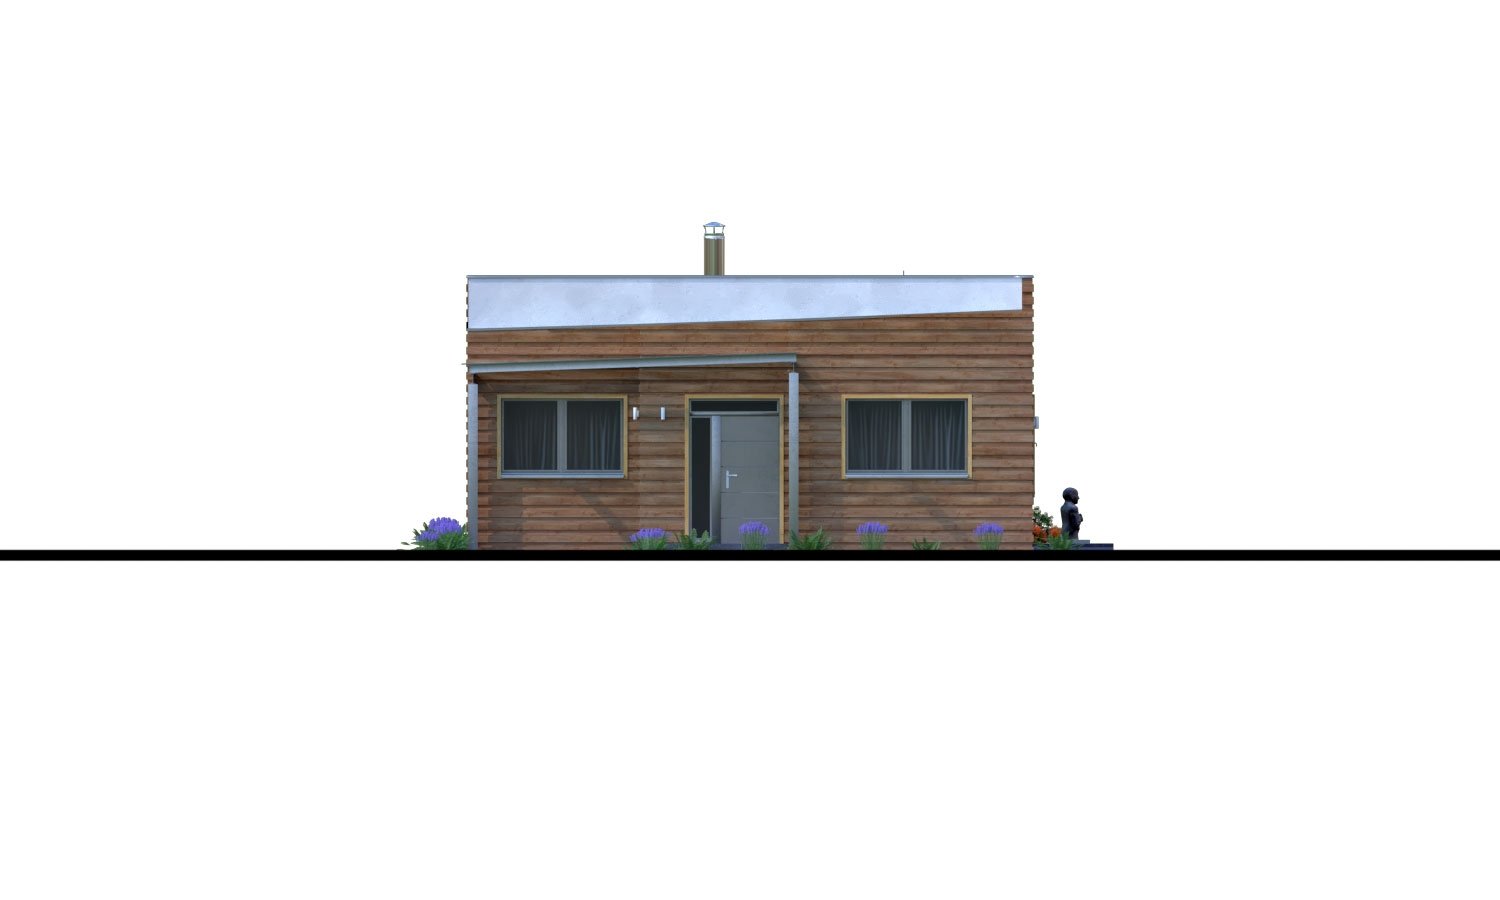 Zrkadlový pohľad 1. - Moderní rodinný dům s přístřeškem pro auto a plochou střechou.